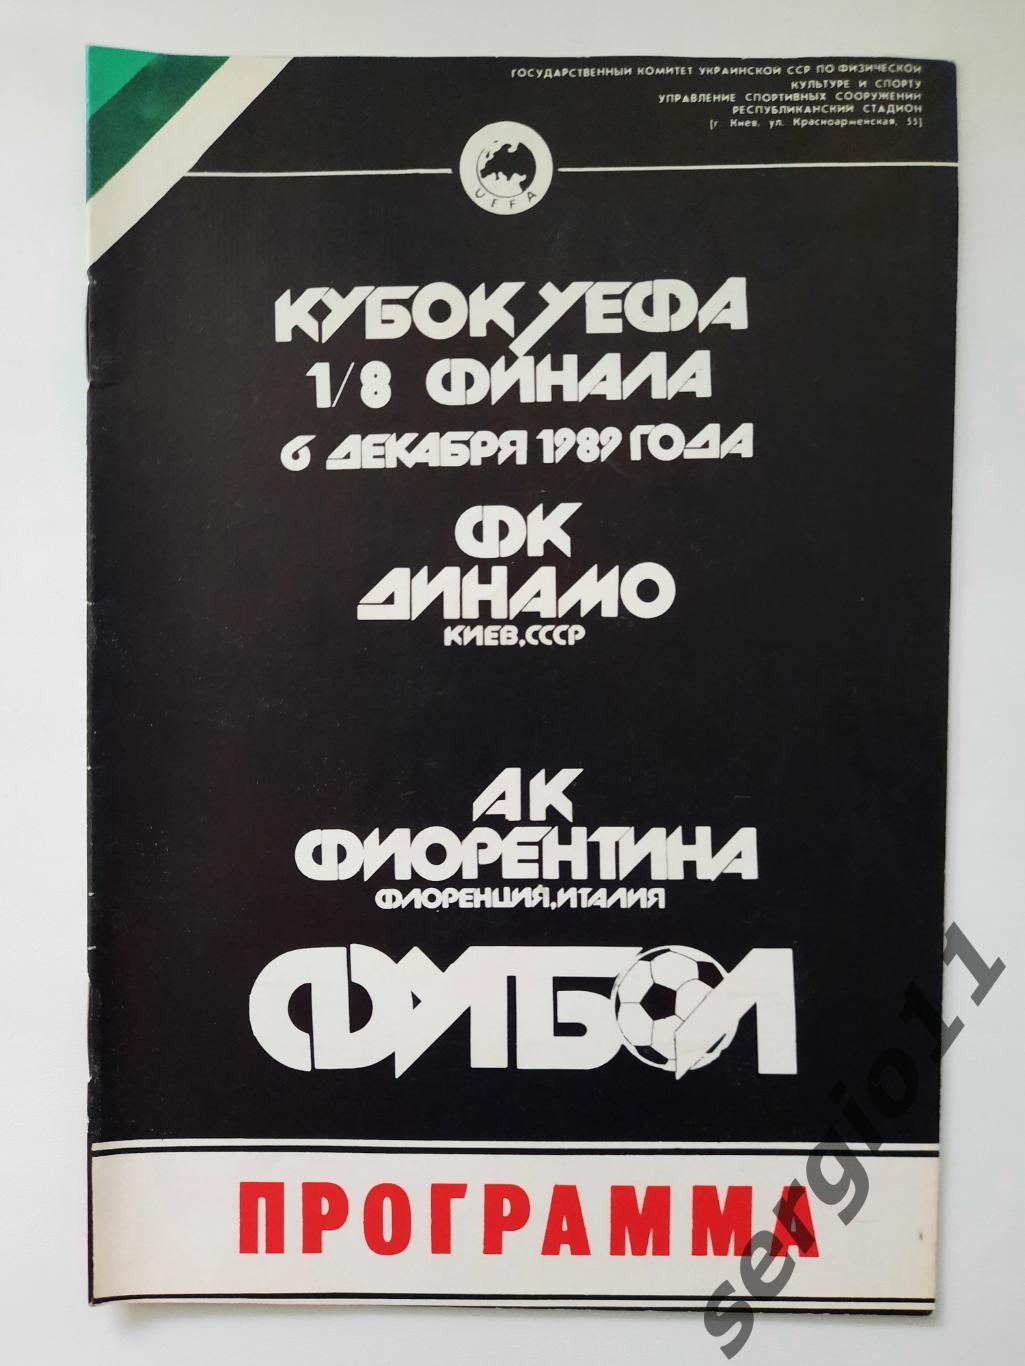 Динамо Киев - Фиорентина Италия 06.12.1989 г. 1/8 финала Кубка УЕФА